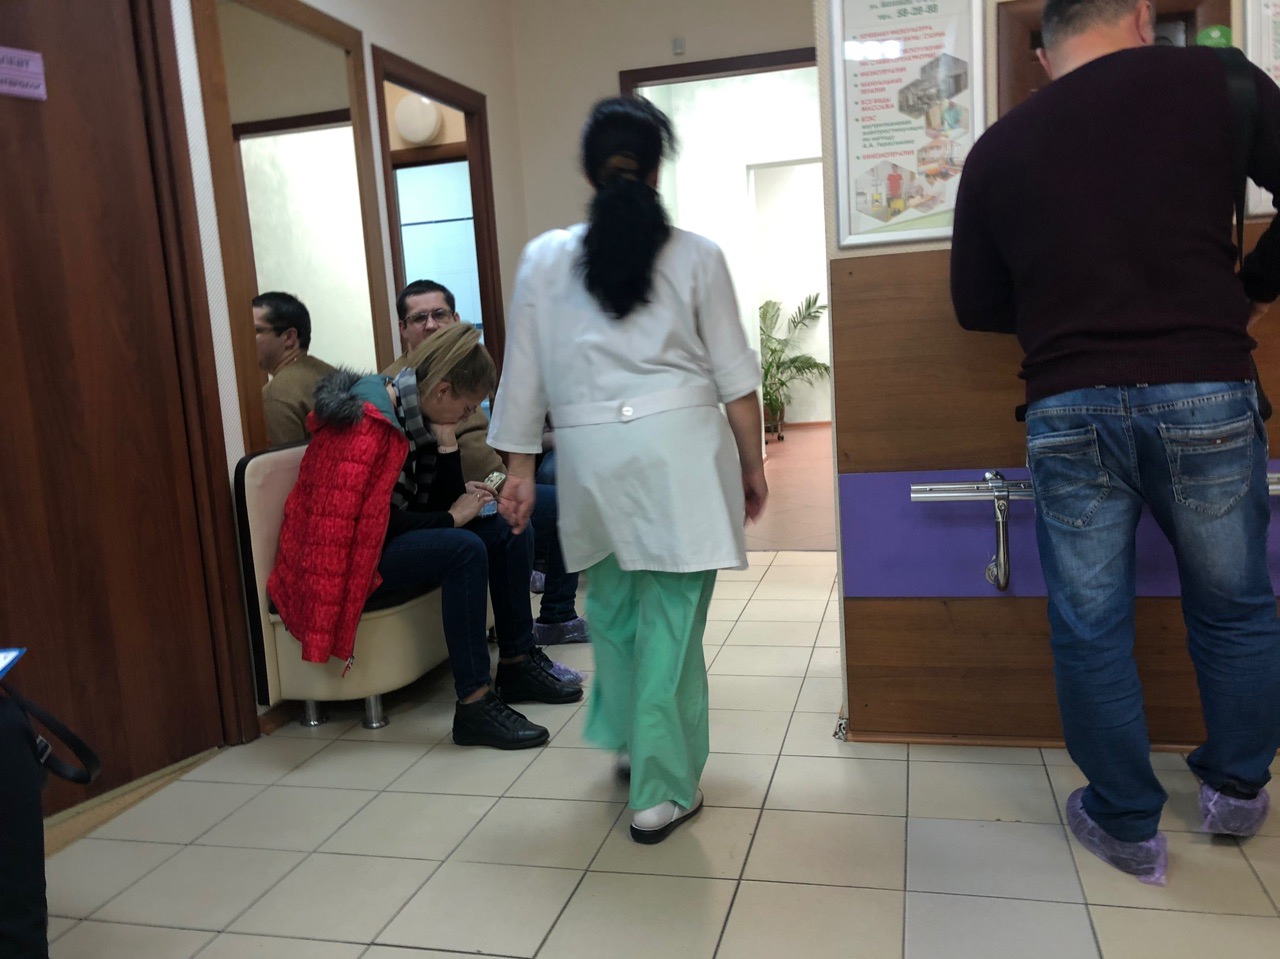 "Ждите инфекций": ярославцам предсказали проблемы со здоровьем из-за погоды